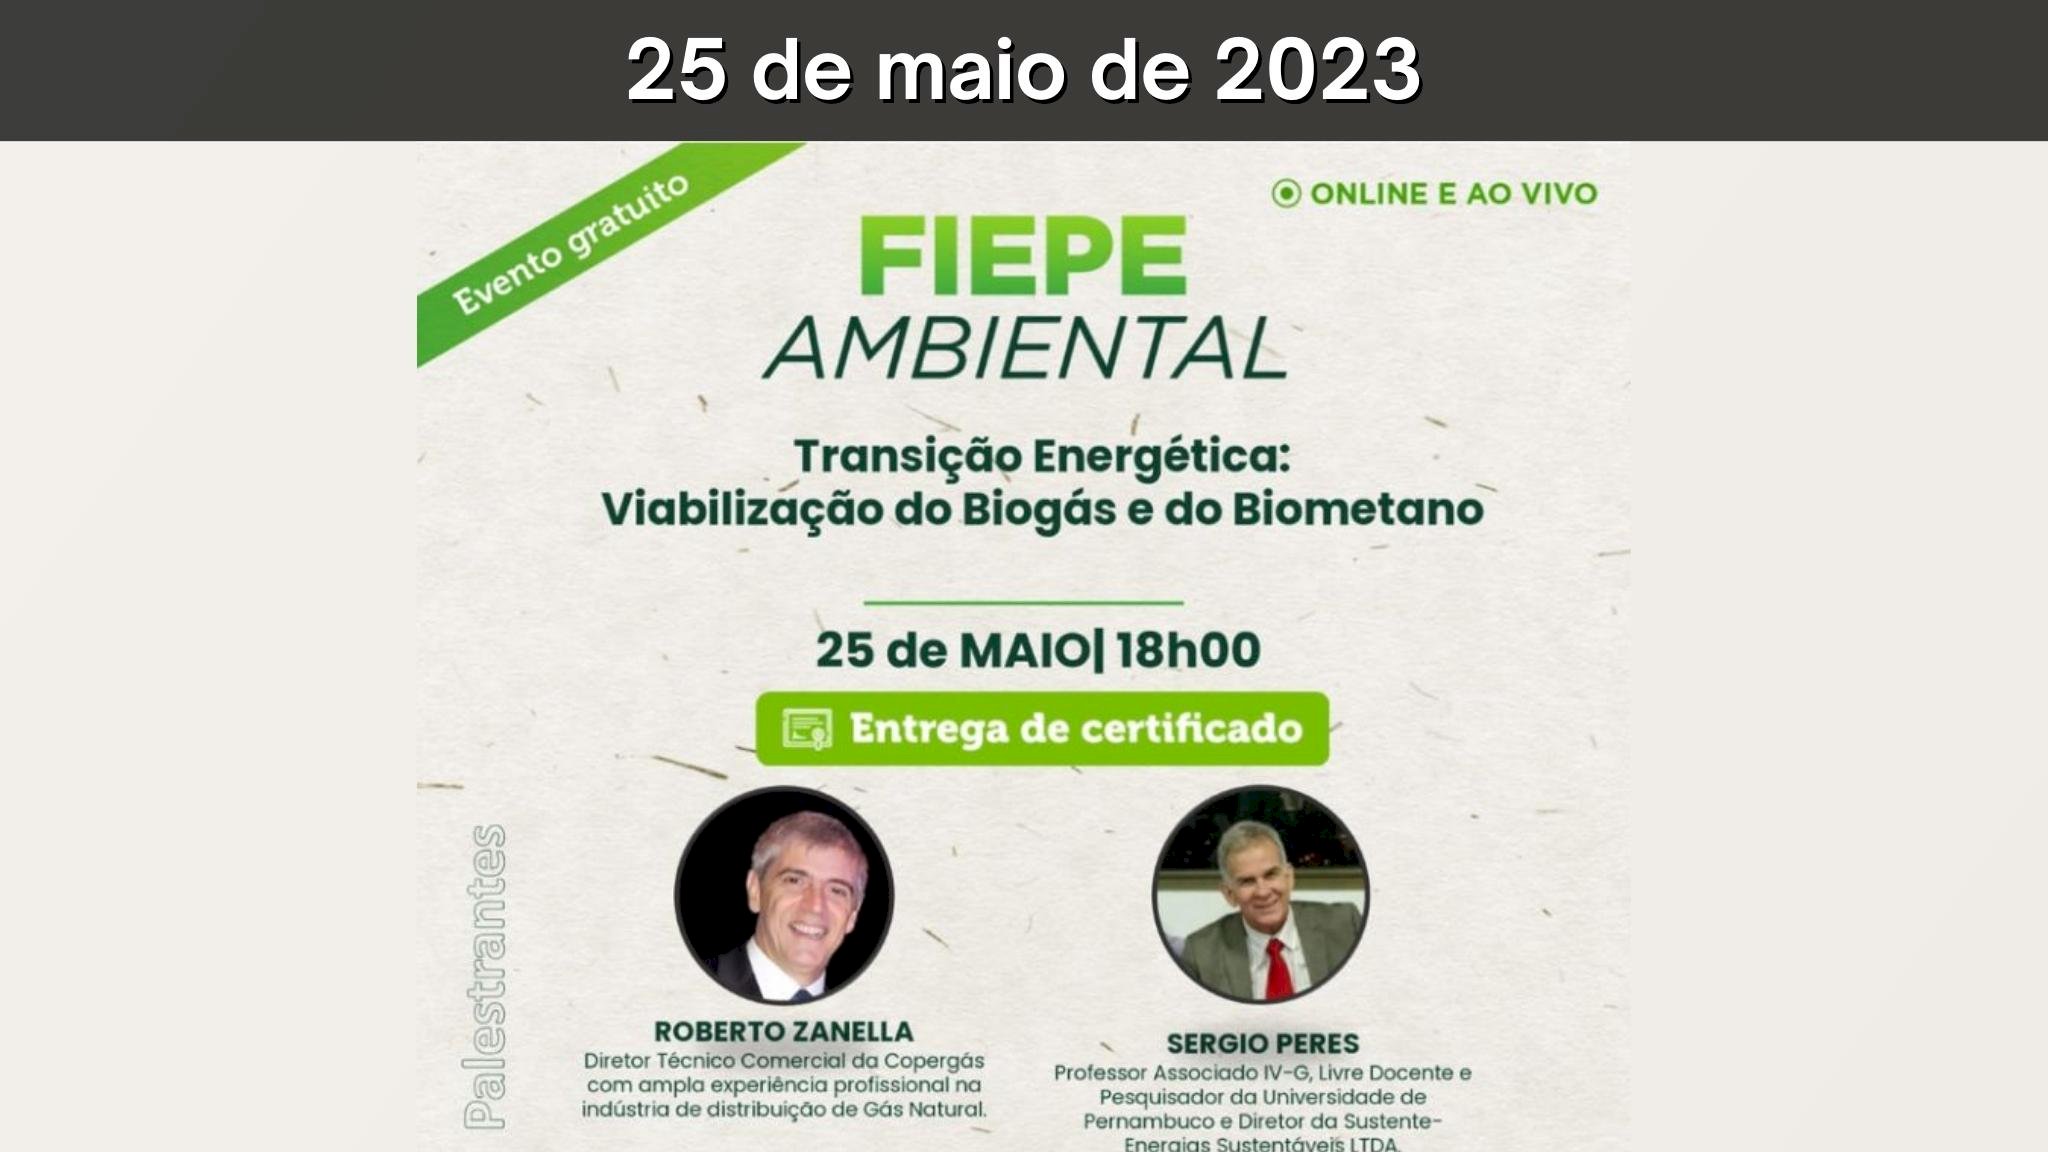 3º FIEPE AMBIENTAL - Transição Energética: Viabilização do Biogás e do  Biometano - Portal Energia e Biogás